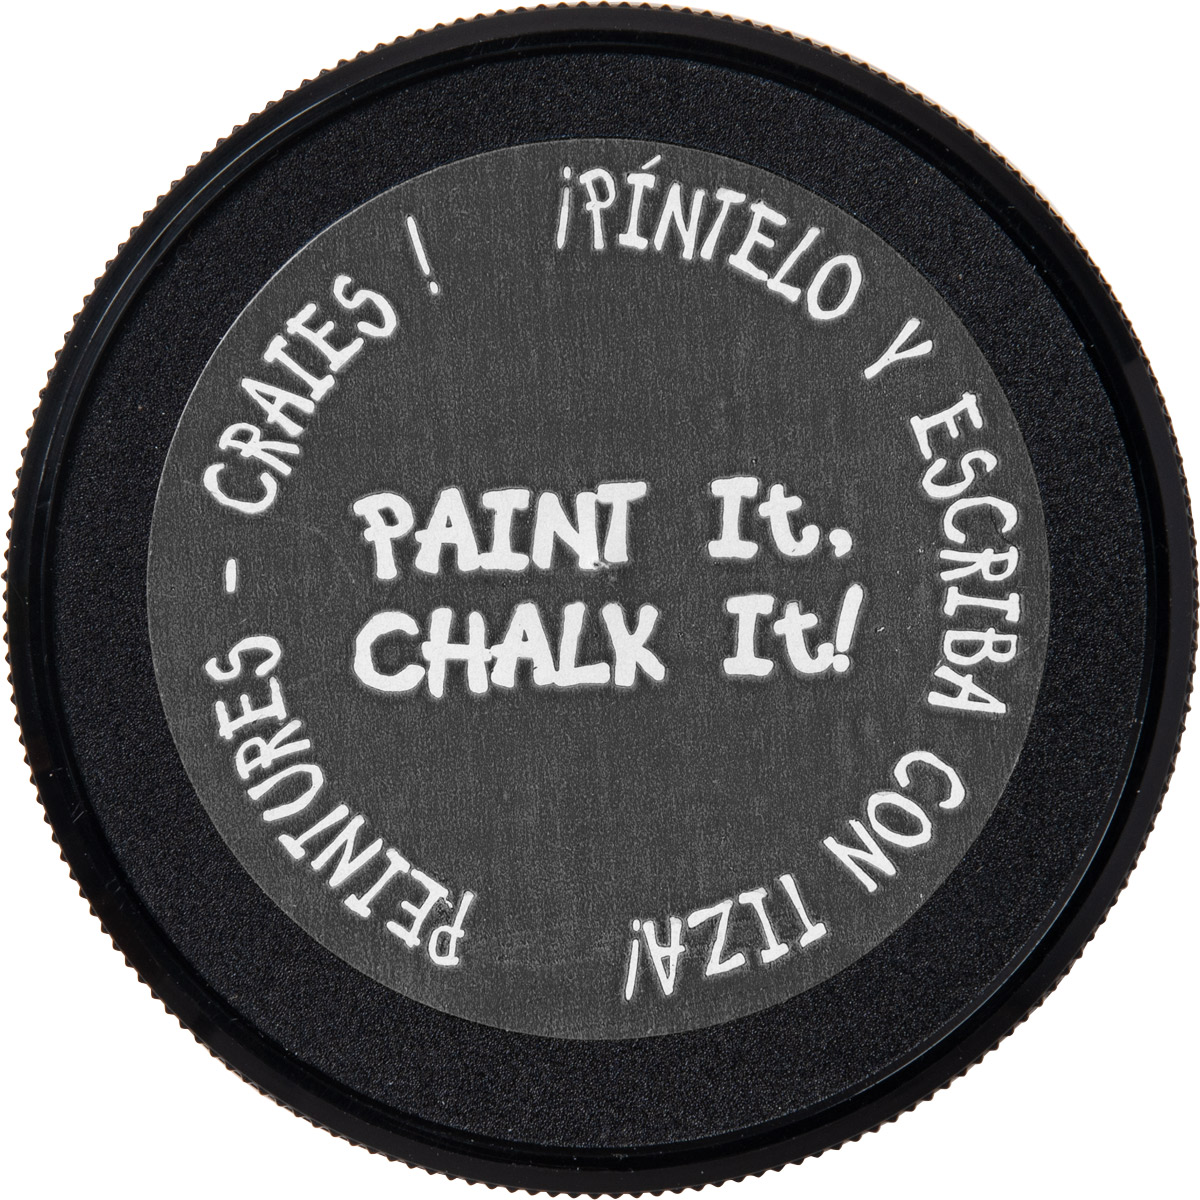 FolkArt ® Chalkboard Paint - Slate Gray, 8 oz. - 2516